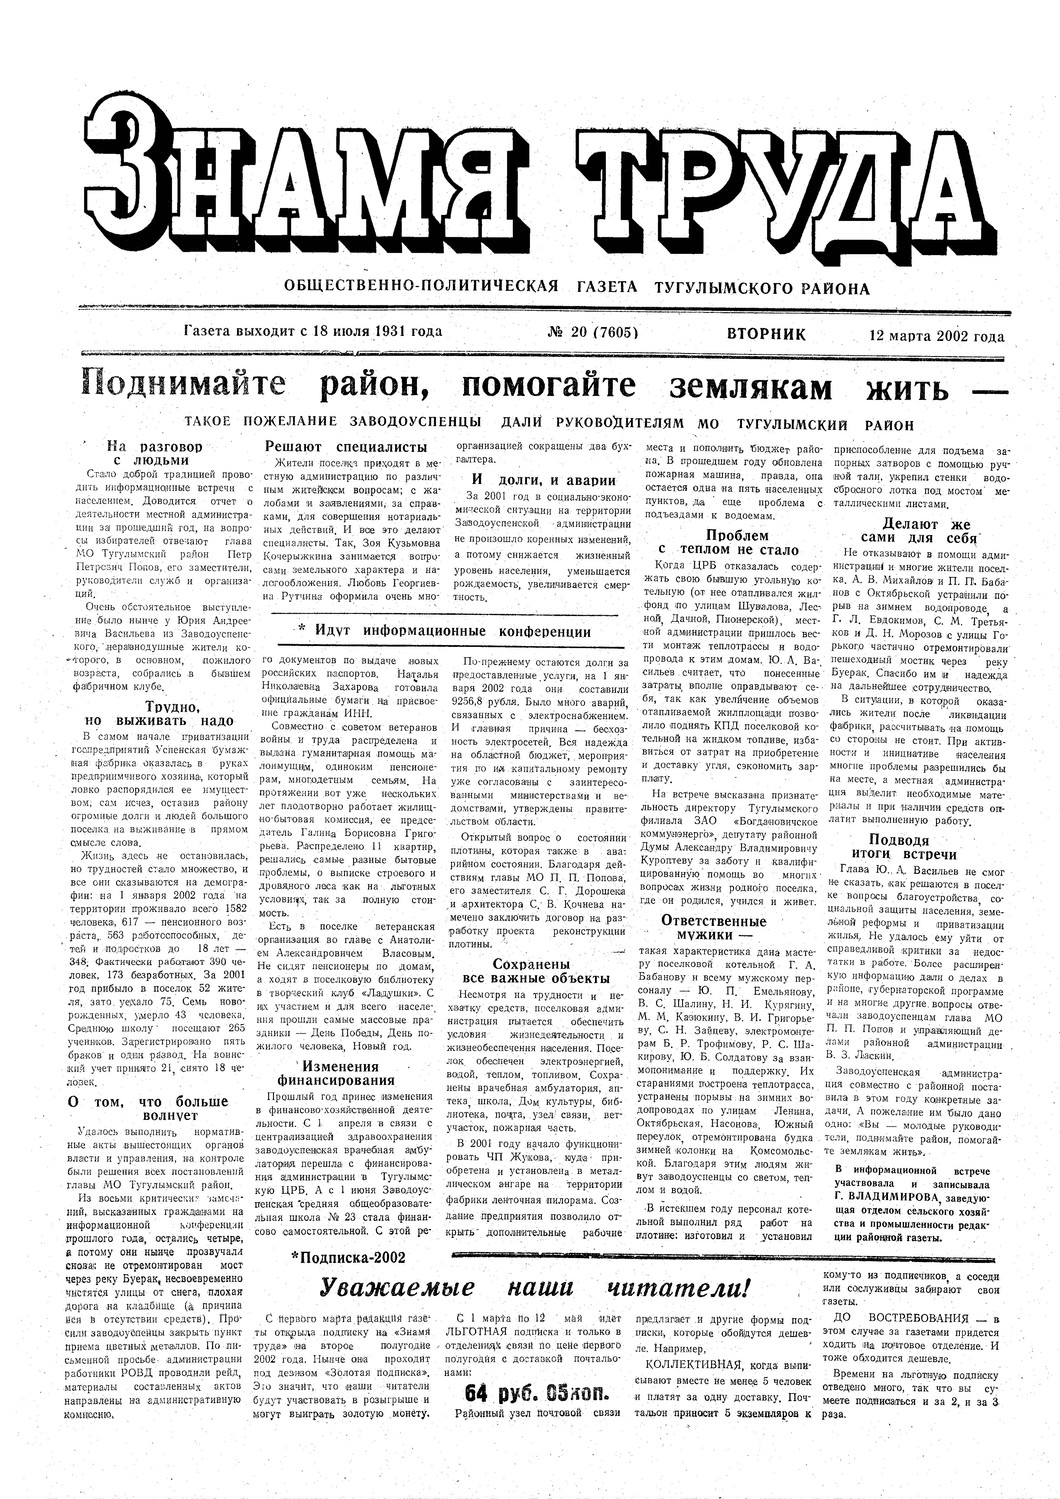 Знамя труда №20 от 12 марта 2002г.